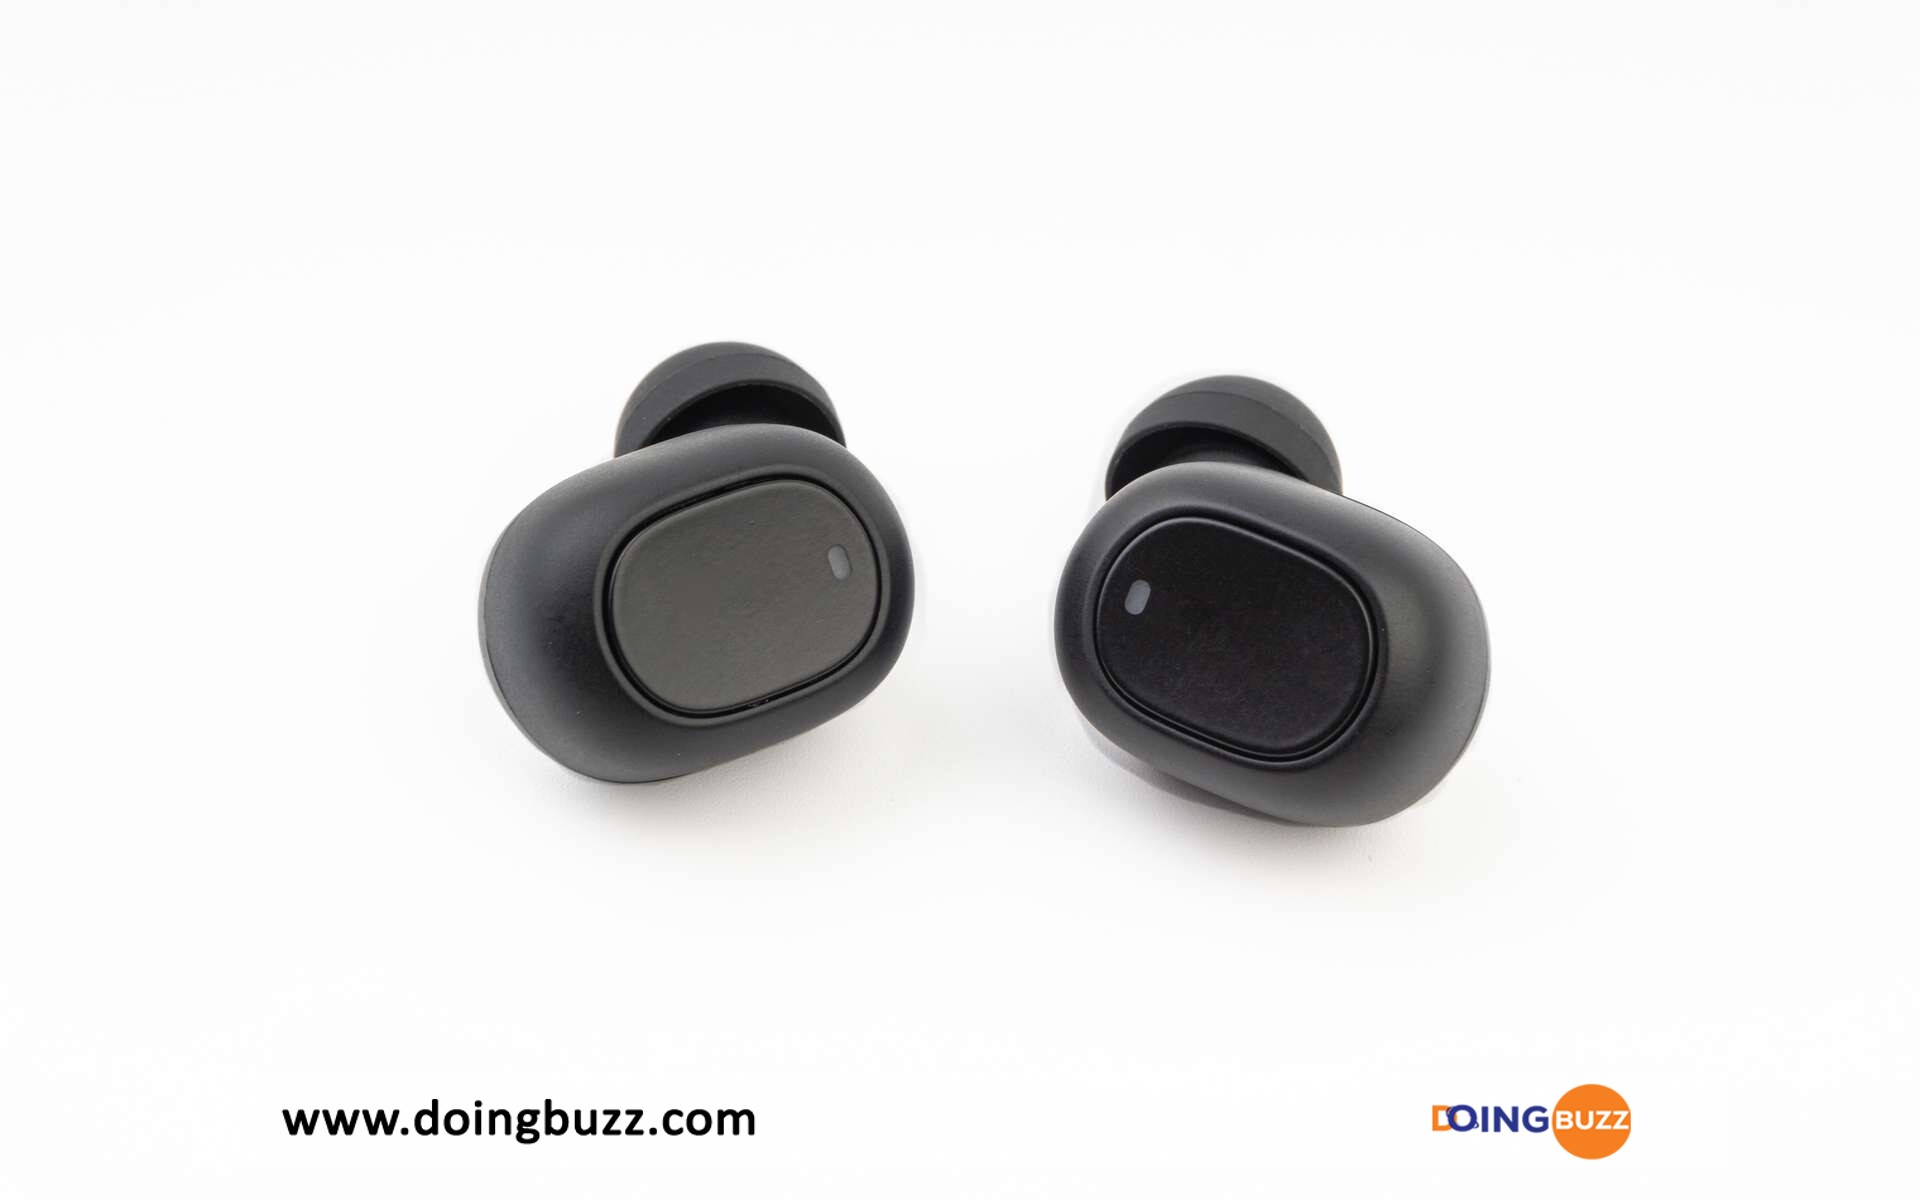 Ecouteurs Bluetooth Doingbuzz